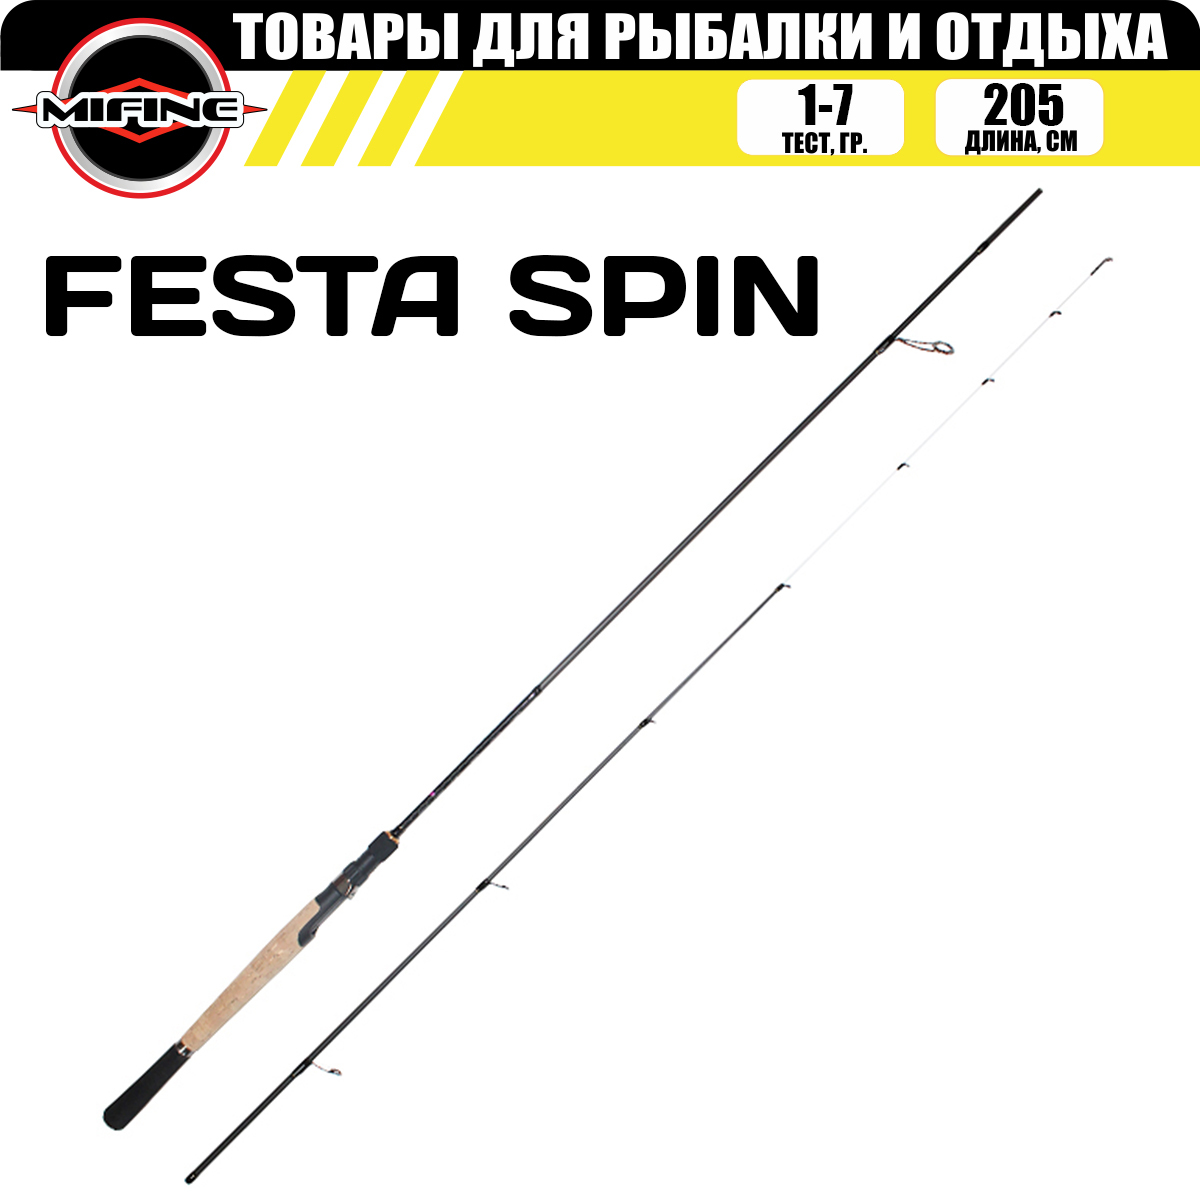 Спиннинг штекерный с быстрым строем MIFINE FESTA SPIN 2.05м (1-7гр), для рыбалки